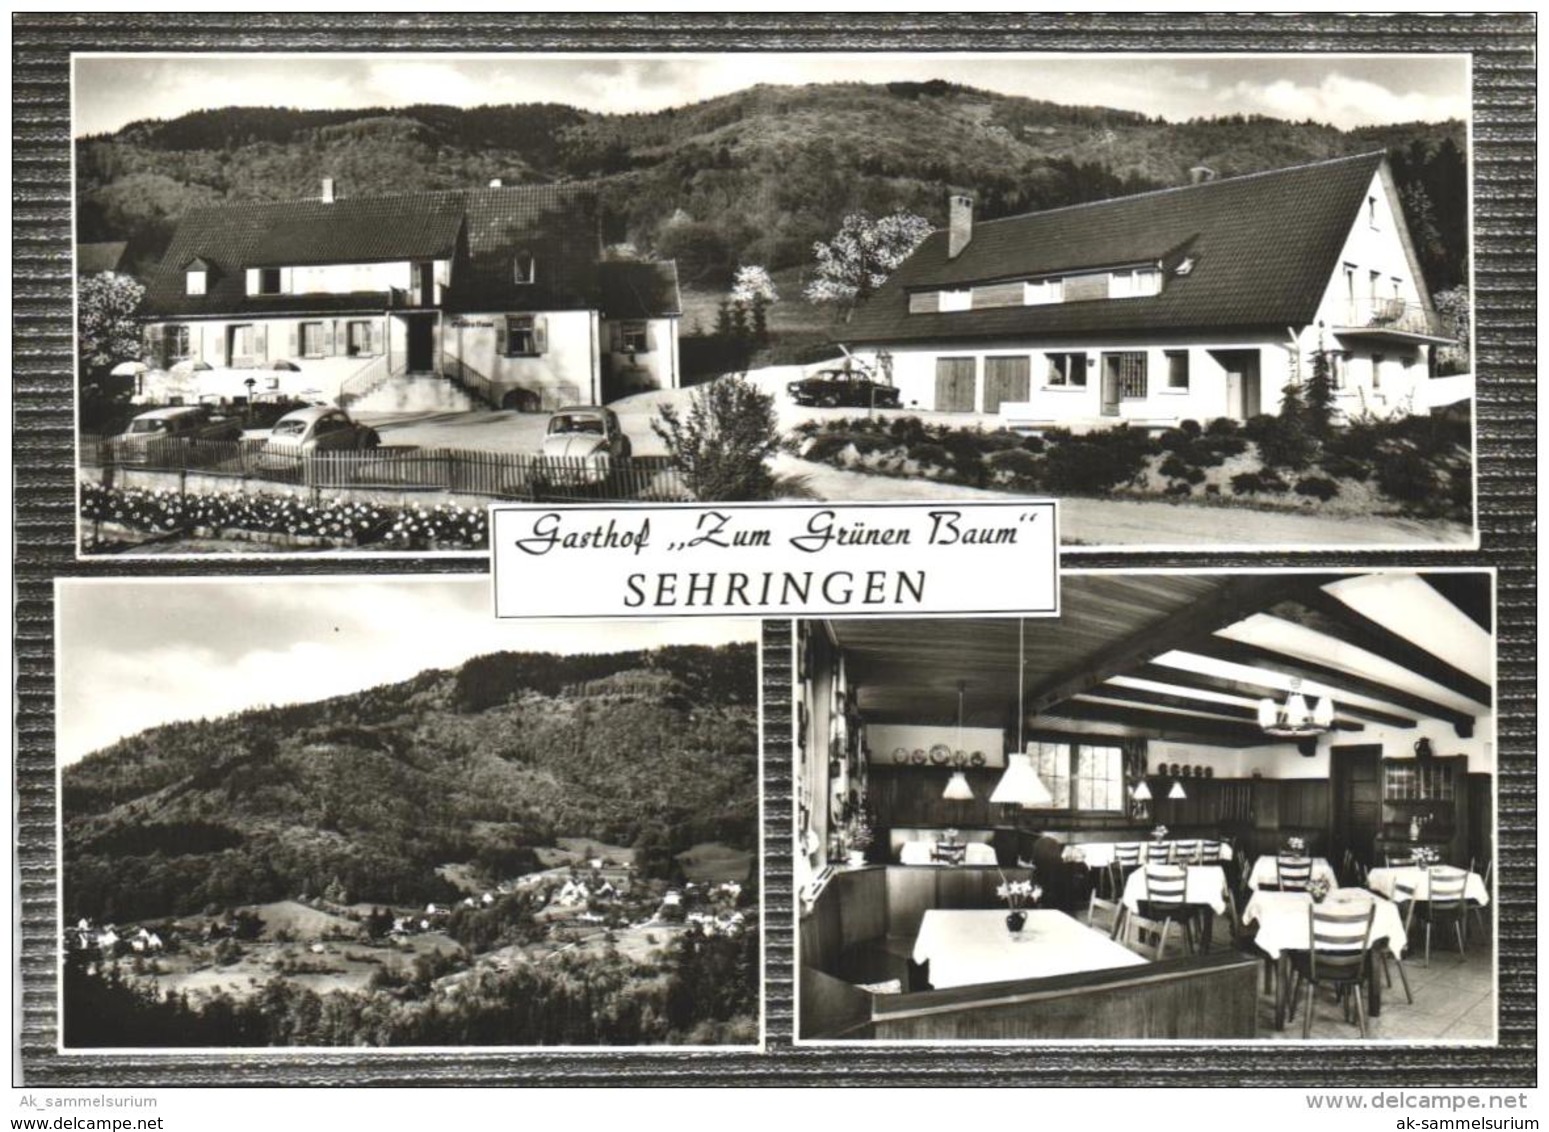 Sehringen / Badenweiler (D-A228) - Badenweiler